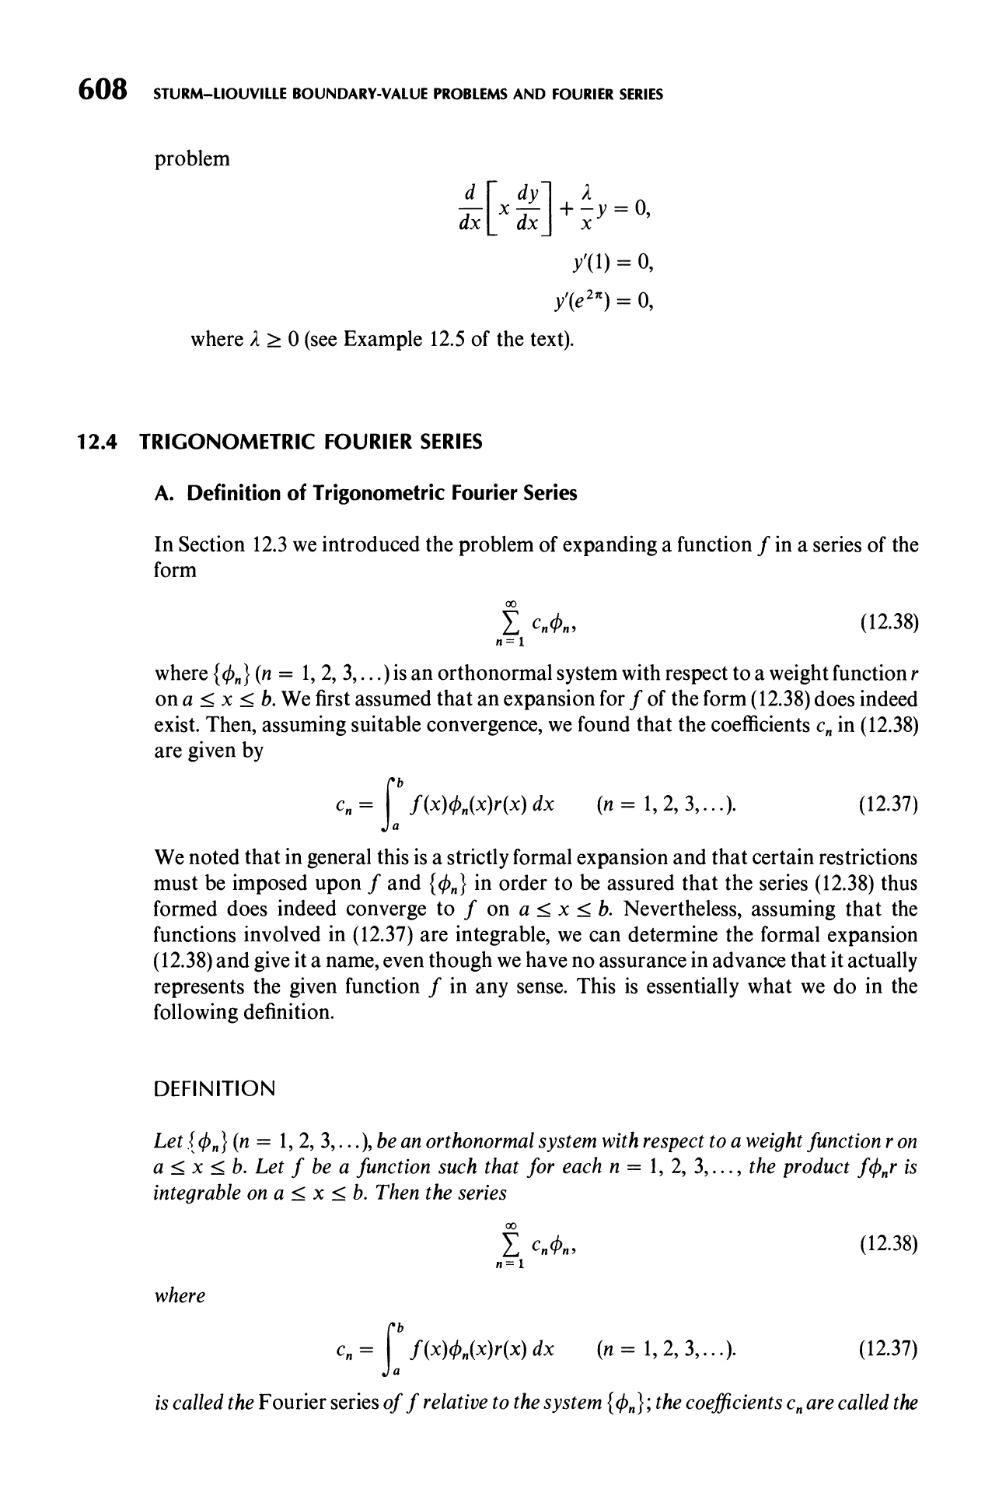 12.4  Trigonometric Fourier Series